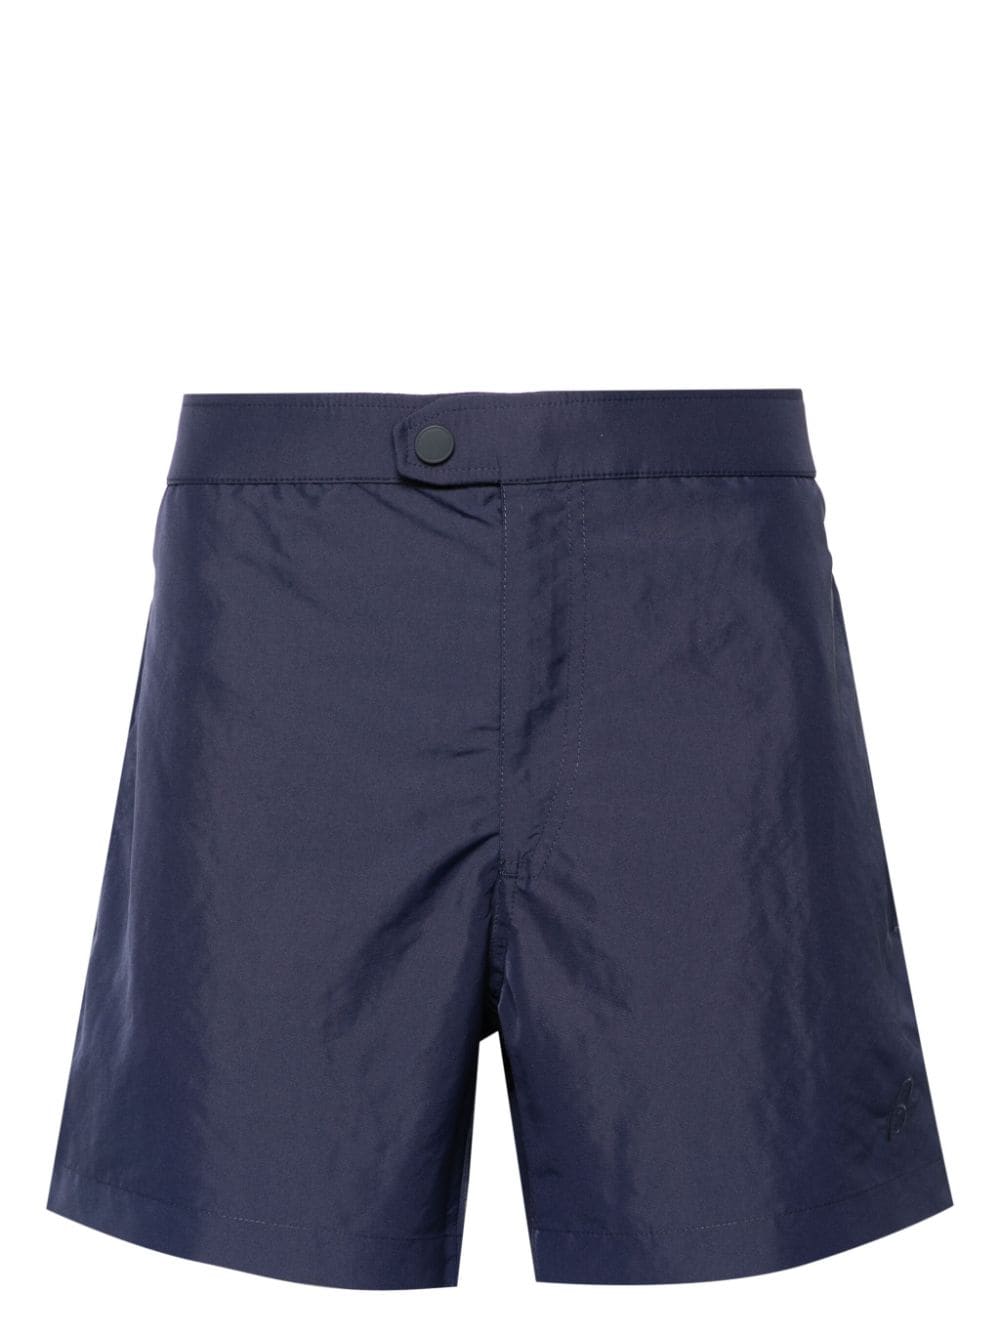 Brioni zip-up swim shorts - Blu